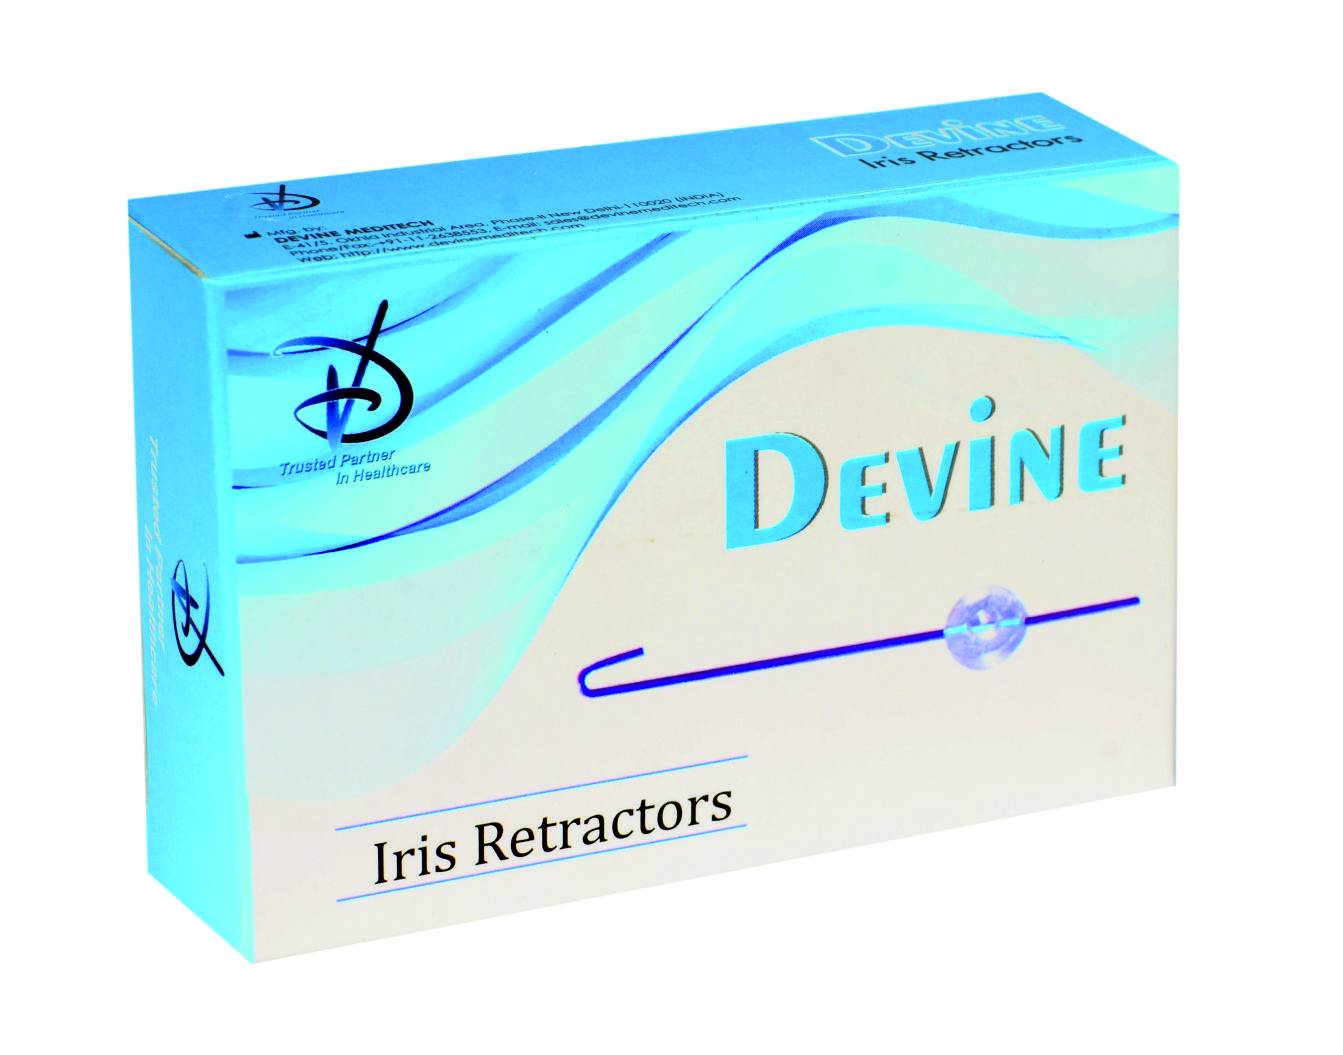 Iris Retractors